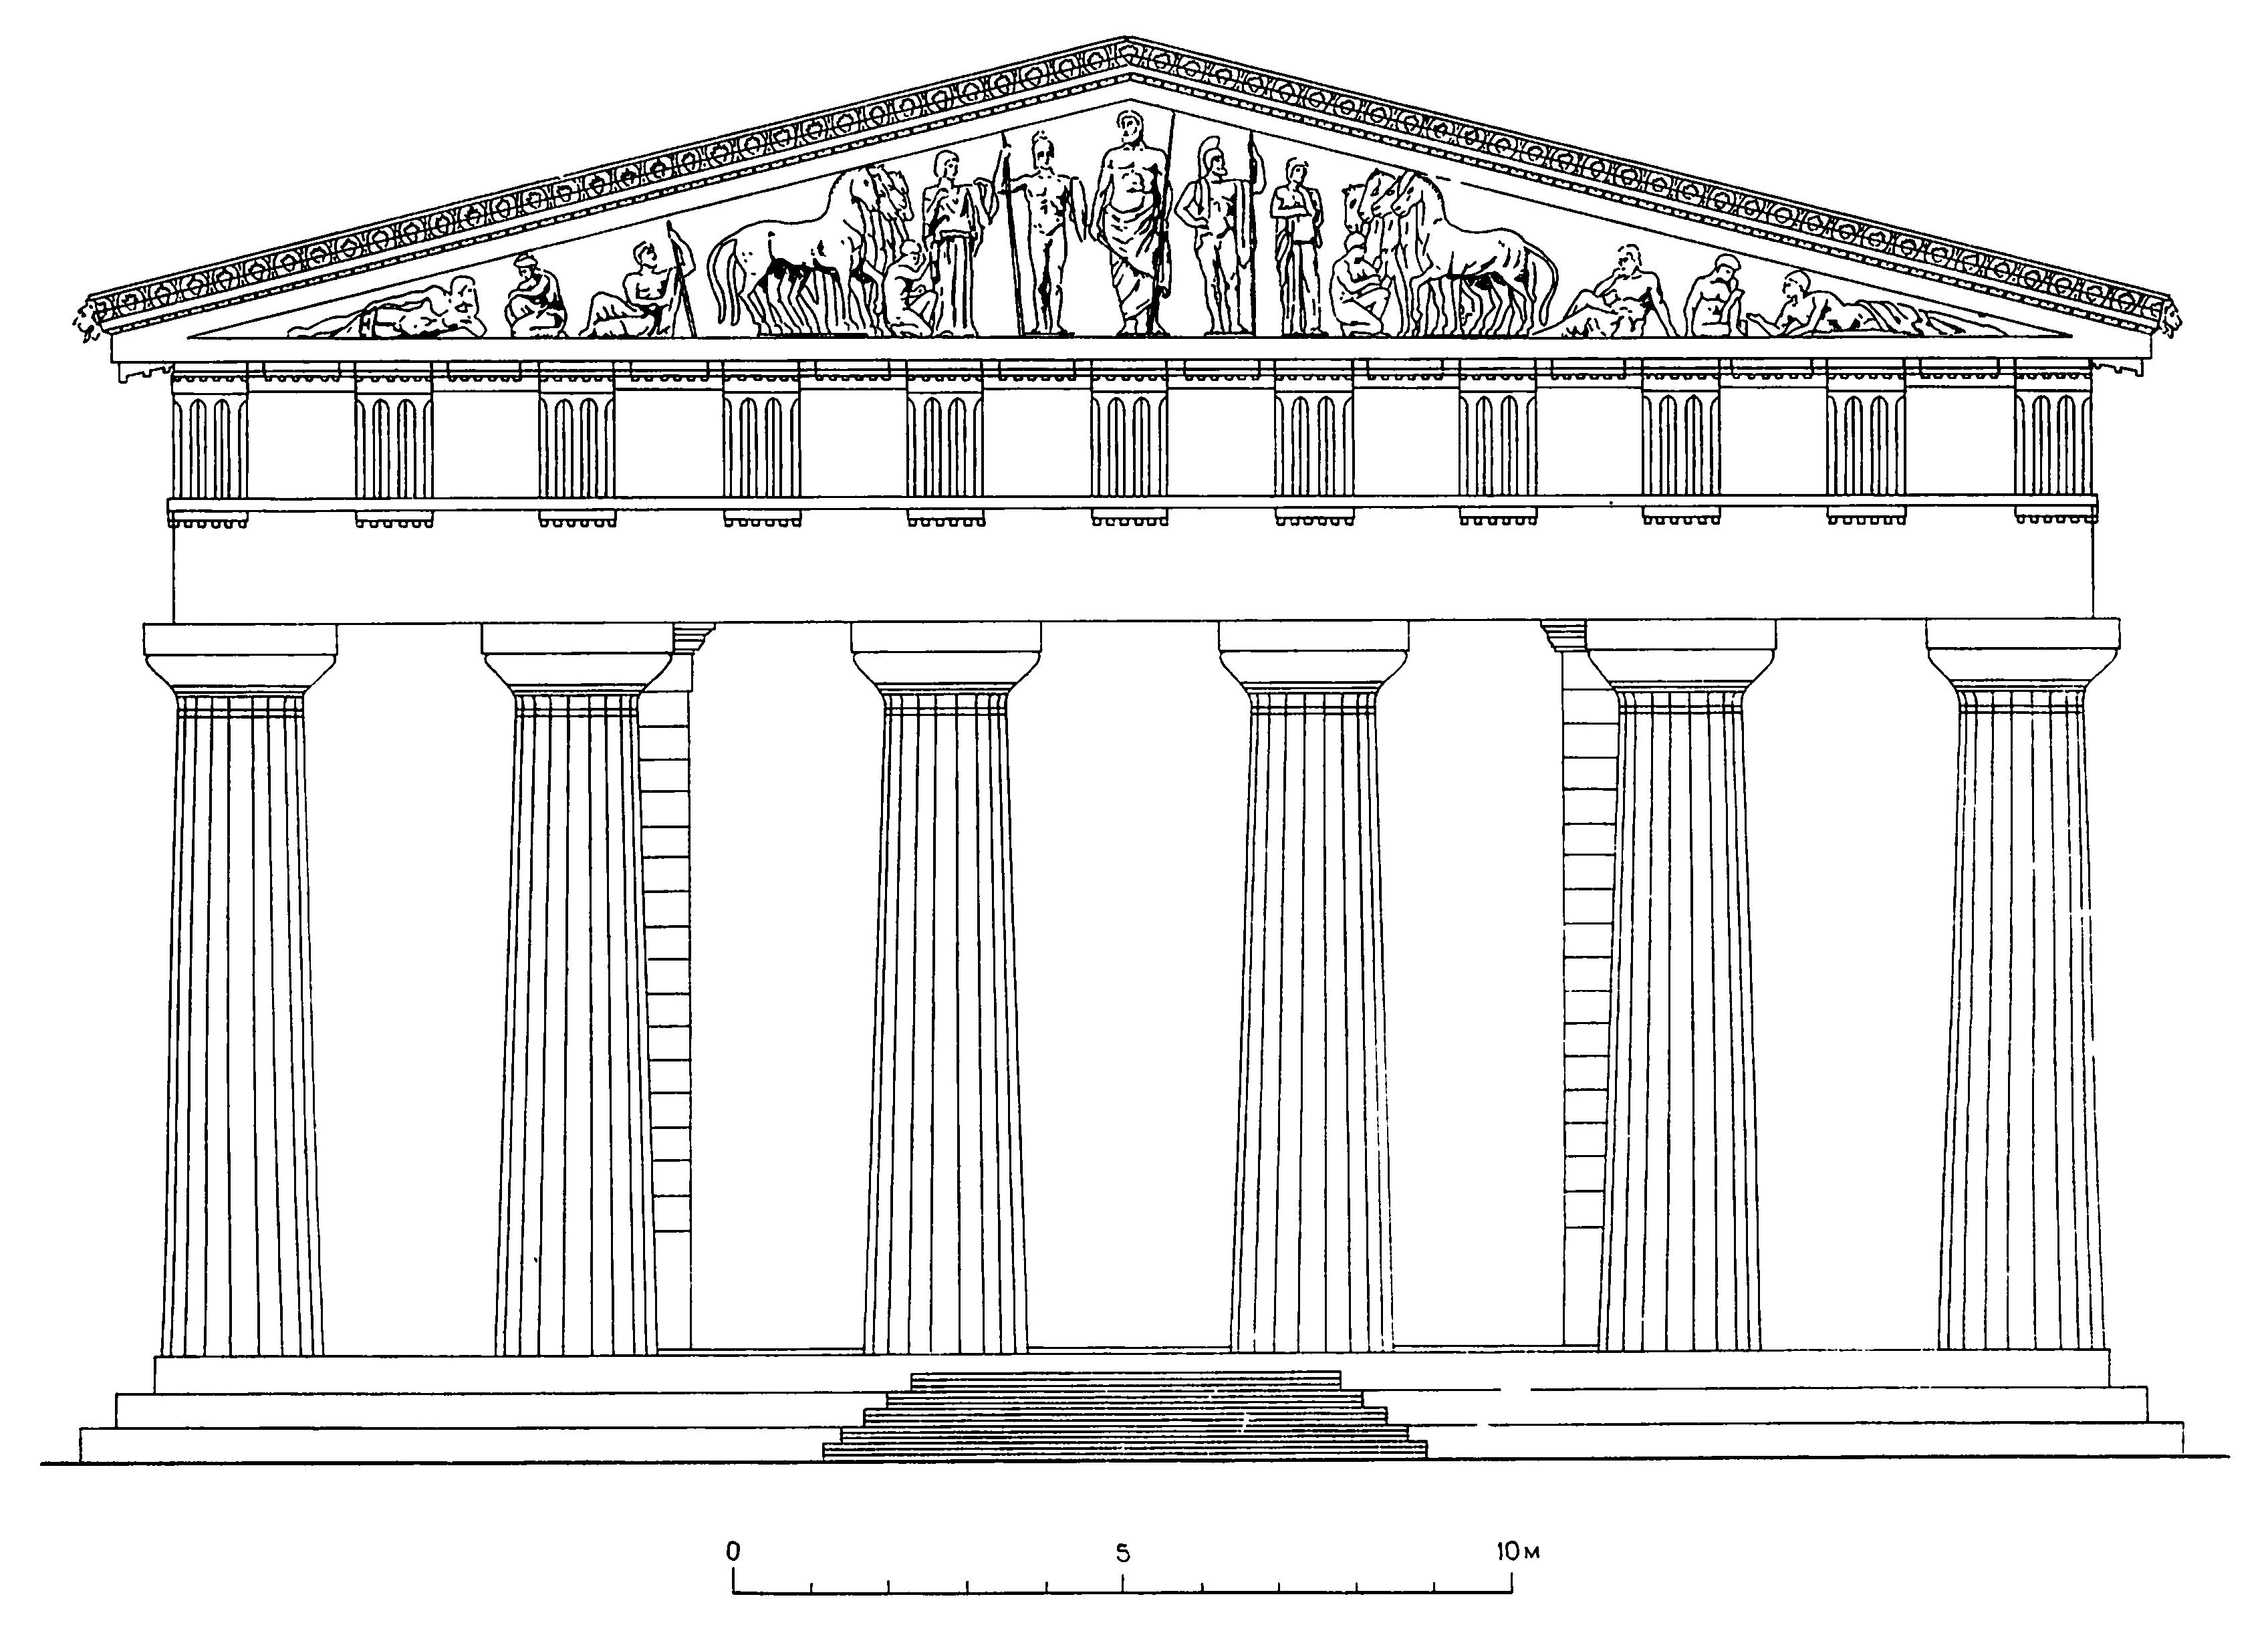 21. Олимпия. Храм Зевса. Вид руин и восточный фасад (реконструкция)